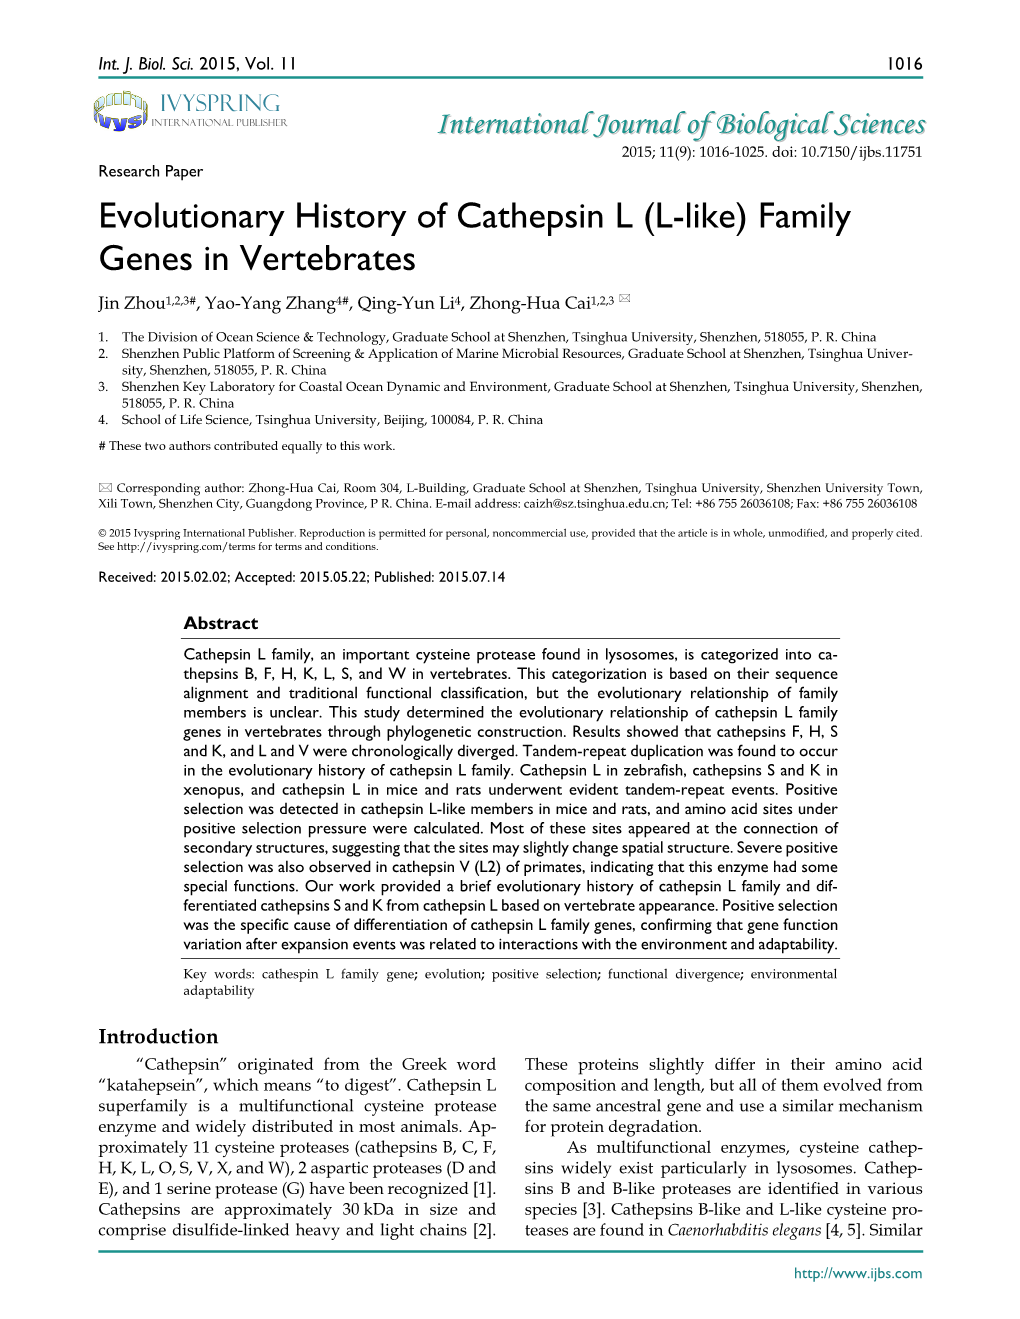 Evolutionary History of Cathepsin L (L-Like) Family Genes in Vertebrates Jin Zhou1,2,3#, Yao-Yang Zhang4#, Qing-Yun Li4, Zhong-Hua Cai1,2,3 